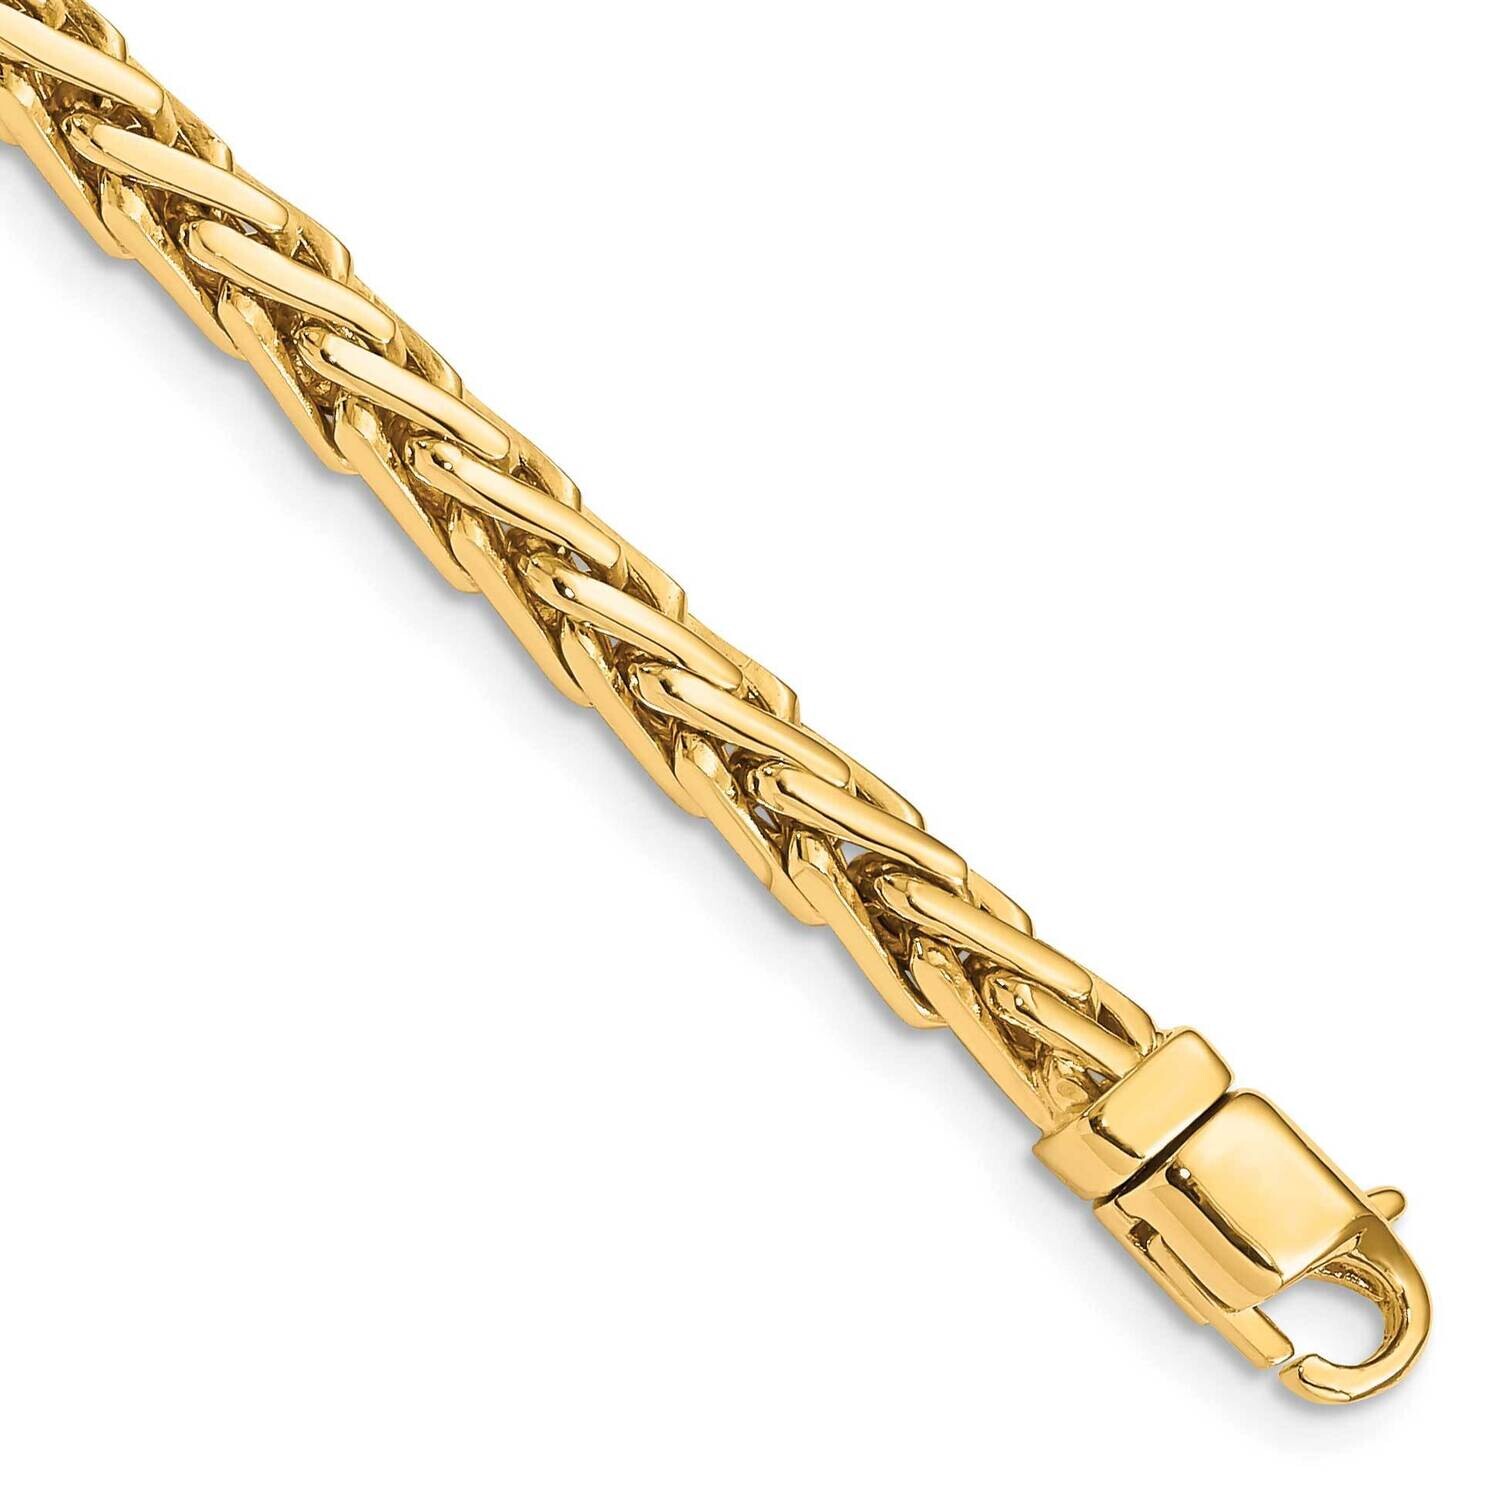 4.4mm Hand-Polished Flat-Edged Woven Link Bracelet 8.75 Inch 10k Gold 10LK754-8.75